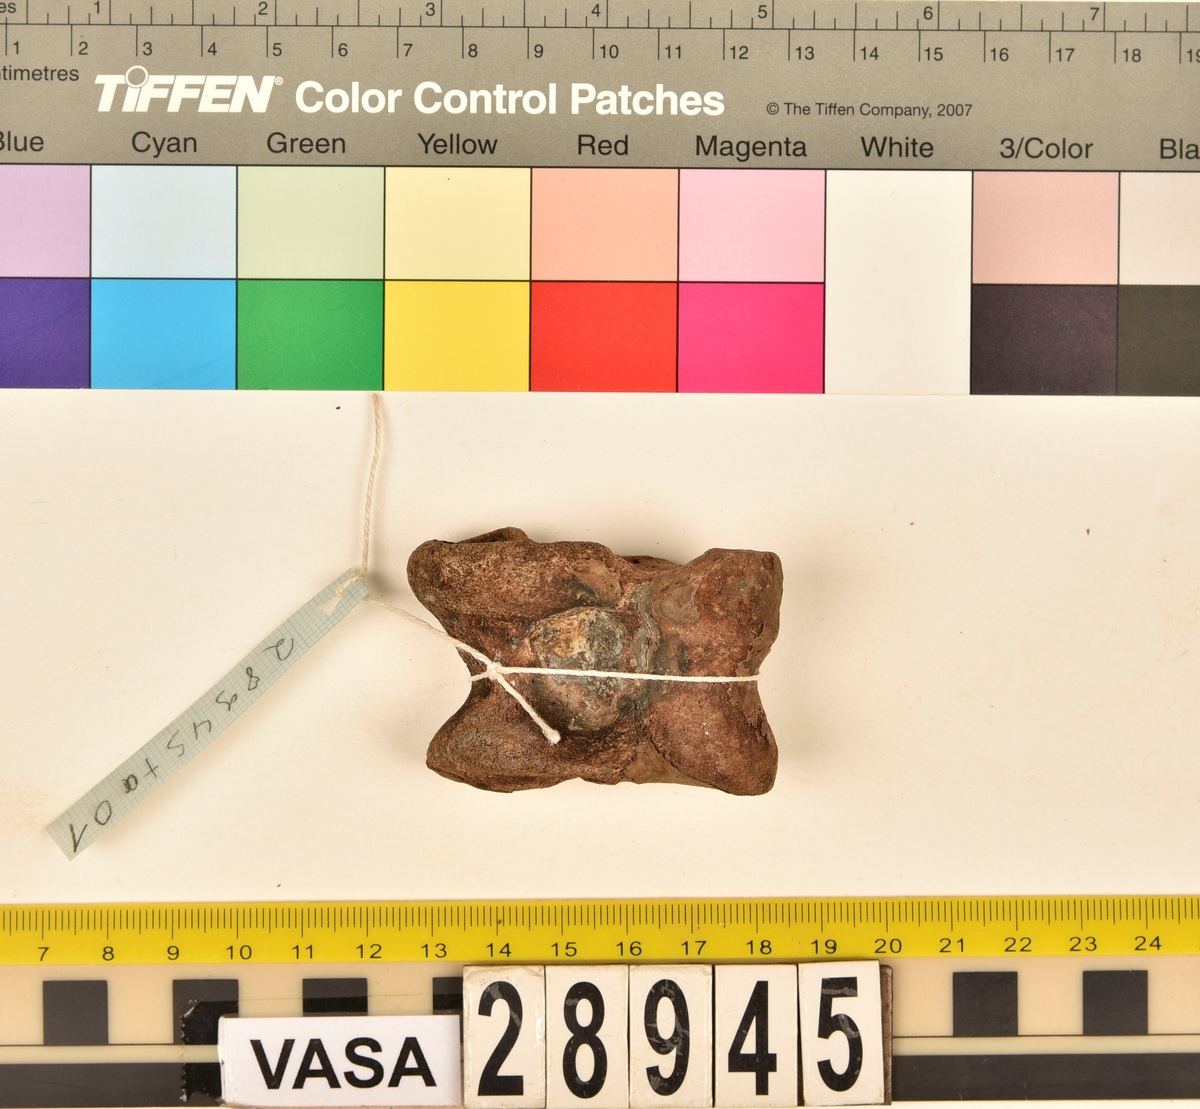 Ben från nötkreatur (Bos taurus). 
1 st. fragment av första halskotan (atlas).
1 st. andra halskotan (epistroheus).
8 st. halskotor (vertebrae cervicale).
10 st. bröstkotor (vertebrae thoracale).
14 st. ländkotor (vertebrae lumbale).
1 st. sista ländkotan (vertebrae lumbale).
1 st. skulderblad (scapula).
23 st. revben (costae).
12 st. strålben (radius).
5 st. armbågsben (ulna).
6 st. delar av bäckenben (pelvis).
6 st. överarmsben (humerus).
1 st. språngben (astragalus).
4 st. lårben (femur).
2 st. skenben (tibia), (en har en lös nedre/distal ledyta/epifys).
1 st. övre del av skenben (tibia).
2 st. delar av överkäkar (maxilla).
1 st. käkfragment (mandibula).
6 st. tänder (dentes).
8 st. underkäkar (mandibula).